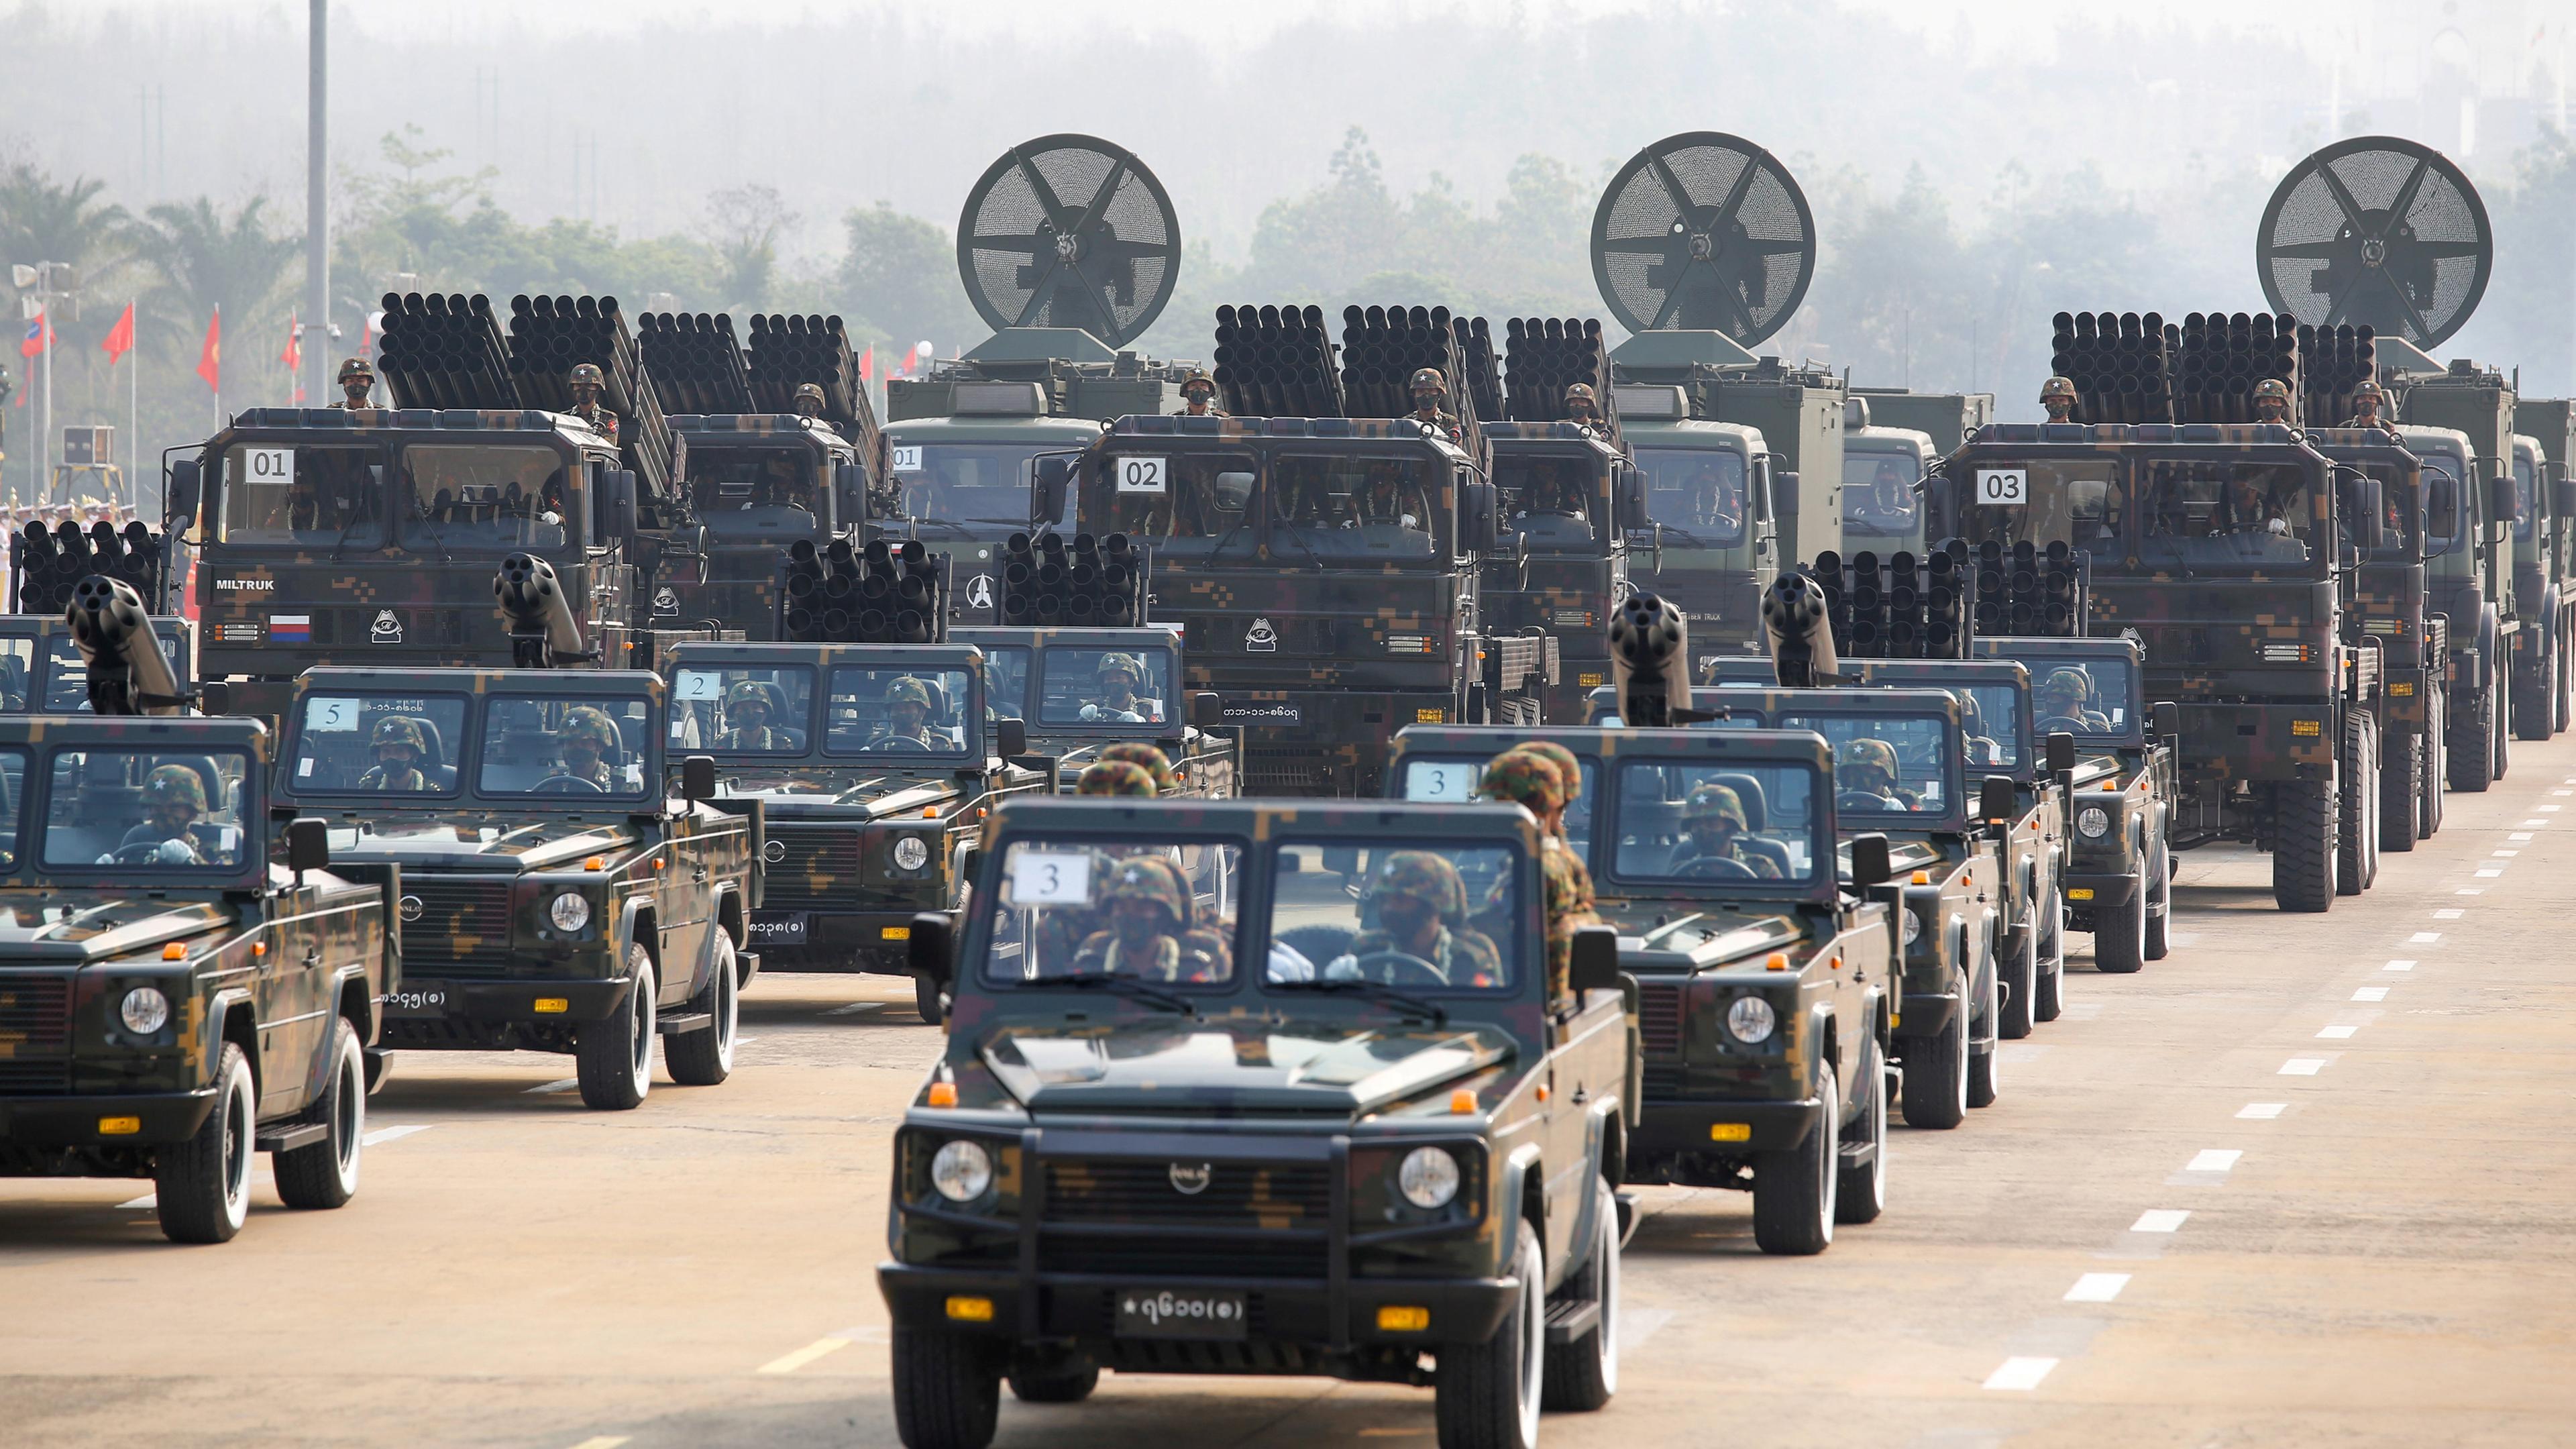 Militärparade in Myanmar mit Panzern; Naypyitaw, Myanmar; 27.03.2021